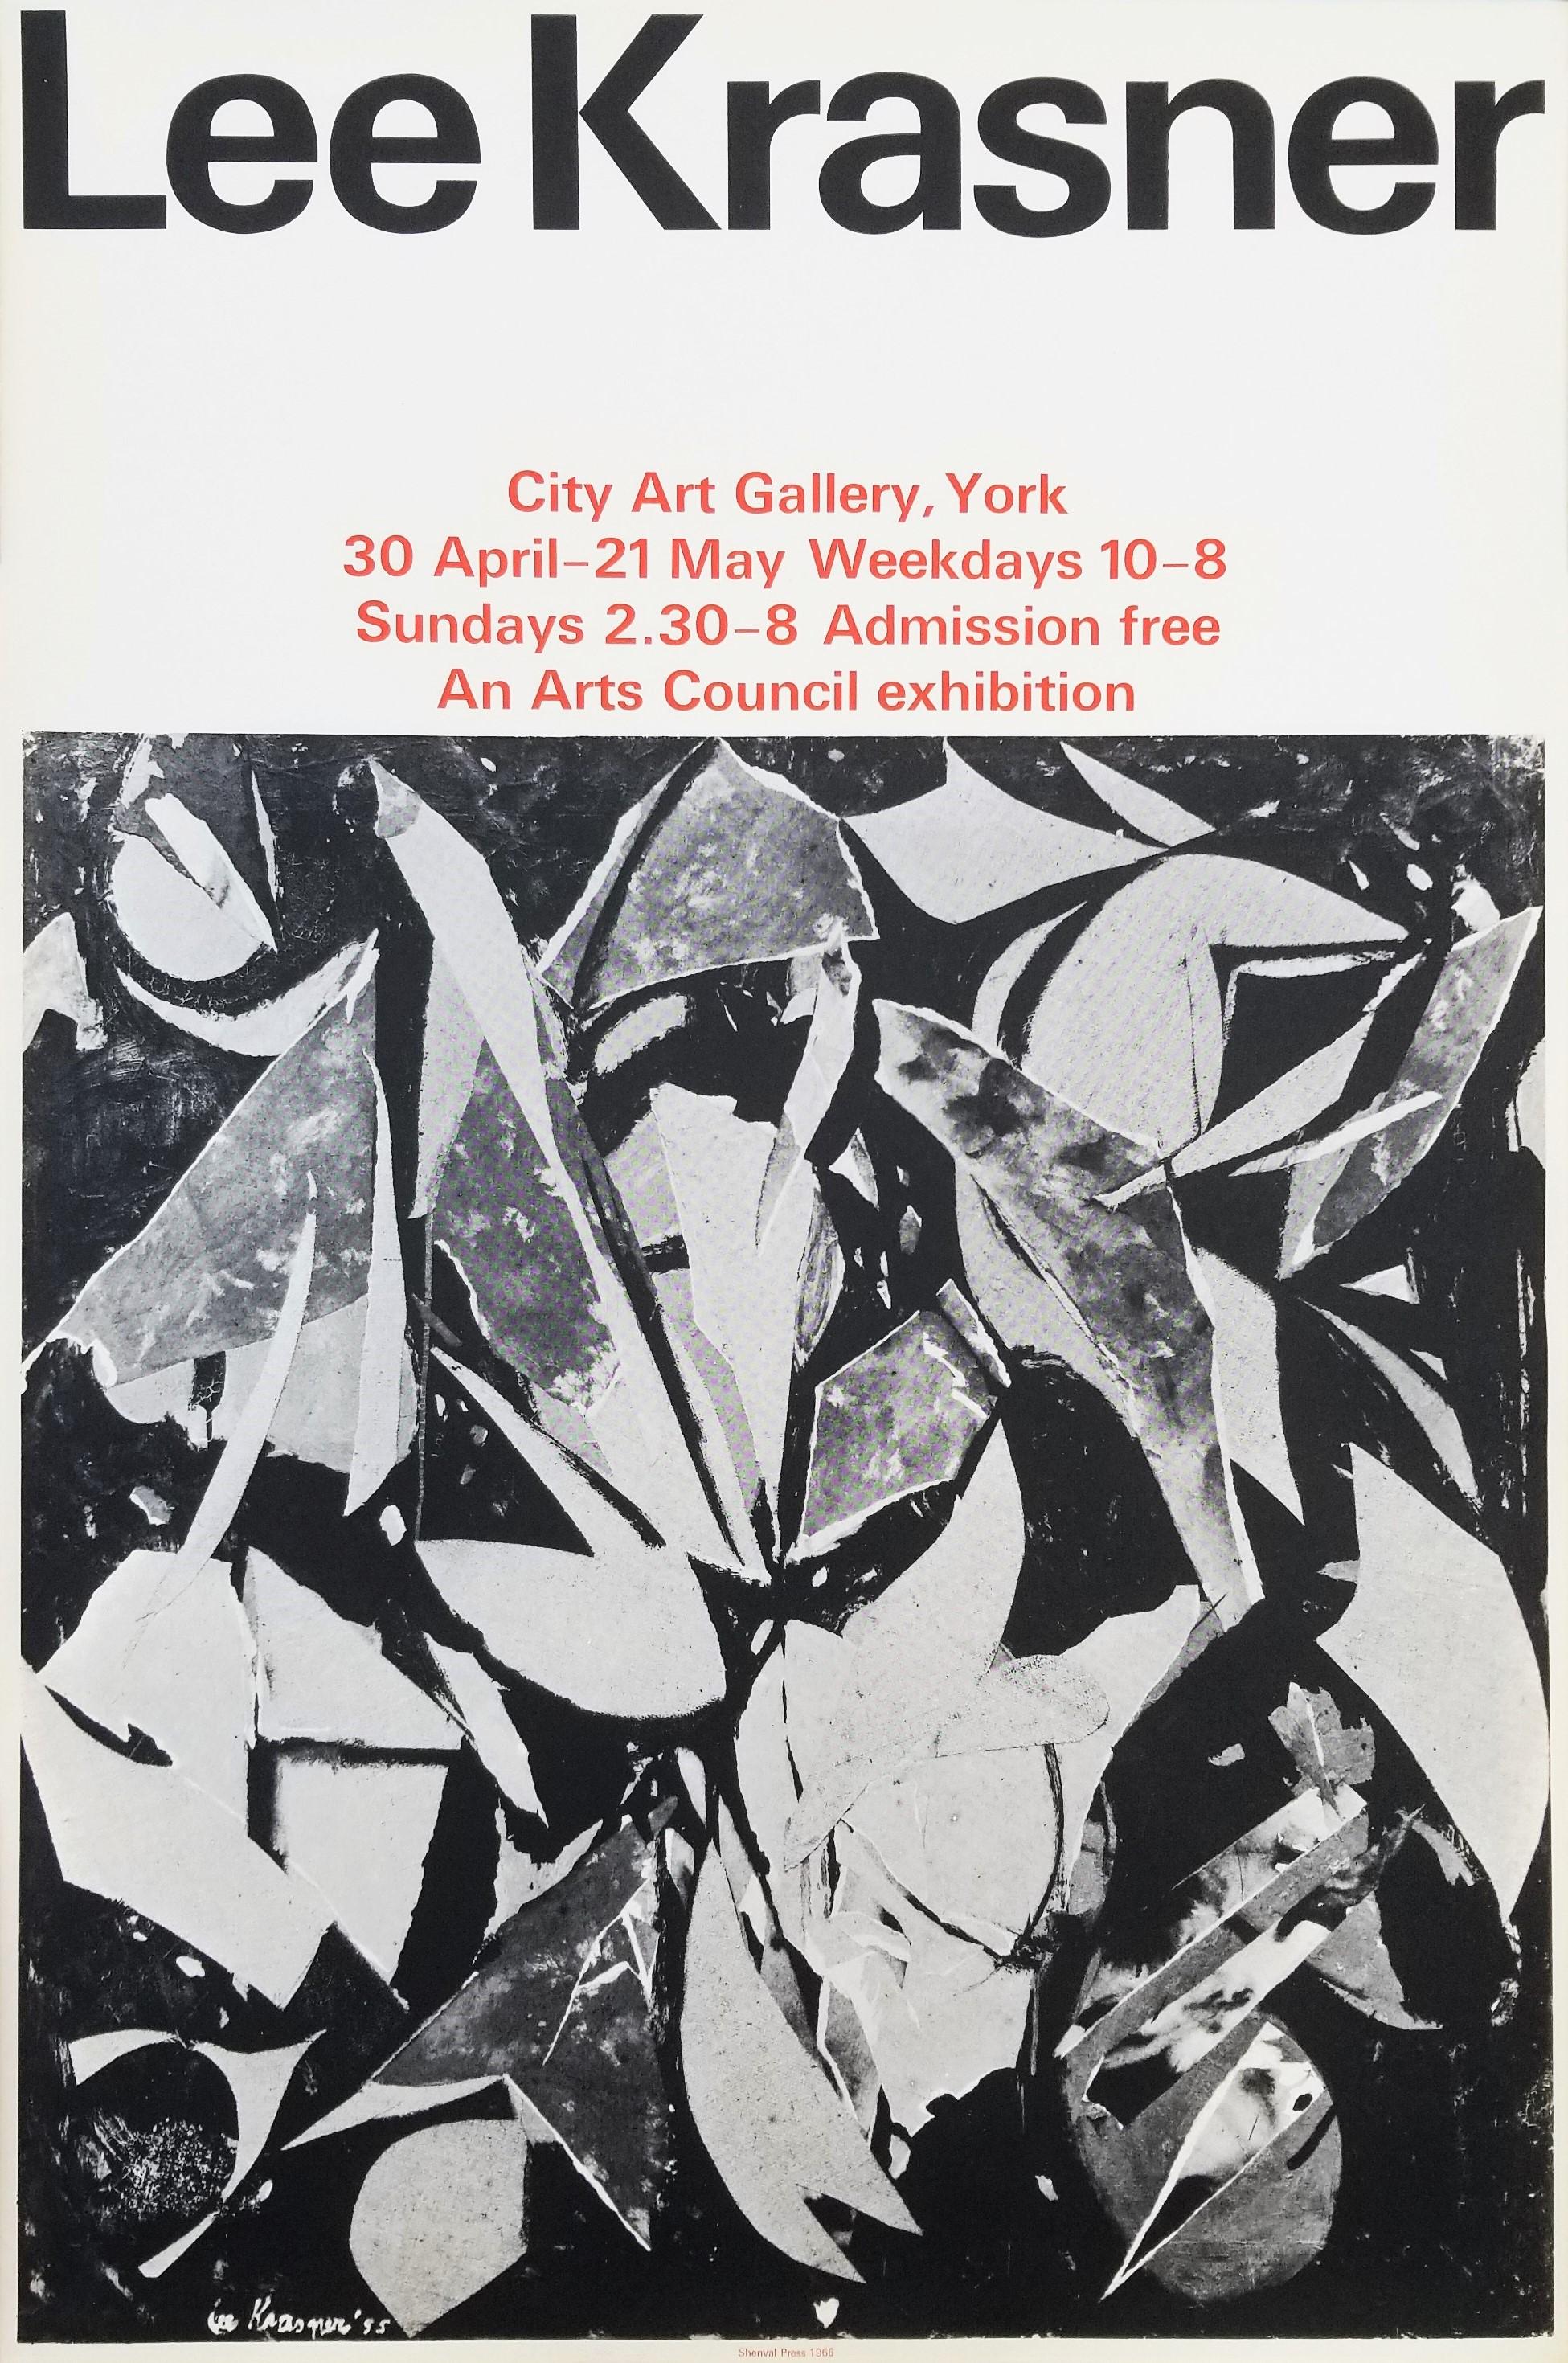 Artiste : (d'après) Lee Krasner (américain, 1908-1984)
Titre : "City Art Gallery (a) Gallery (Bird Talk)"
*Signé et daté par Krasner dans la plaque (signature imprimée) en bas à gauche
Année : 1966
Support : Lithographie originale, affiche